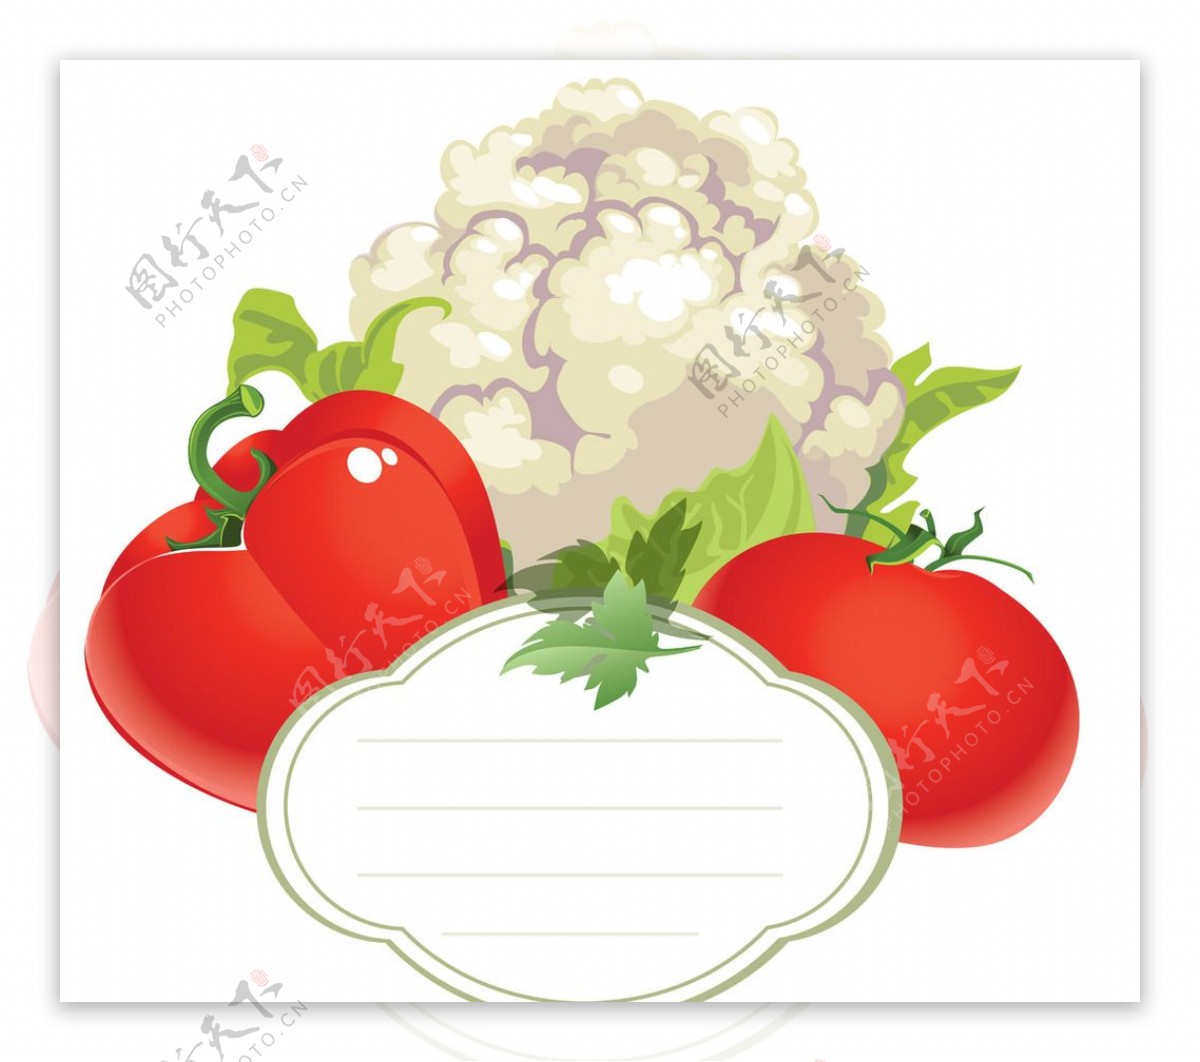 蔬菜卡片图片